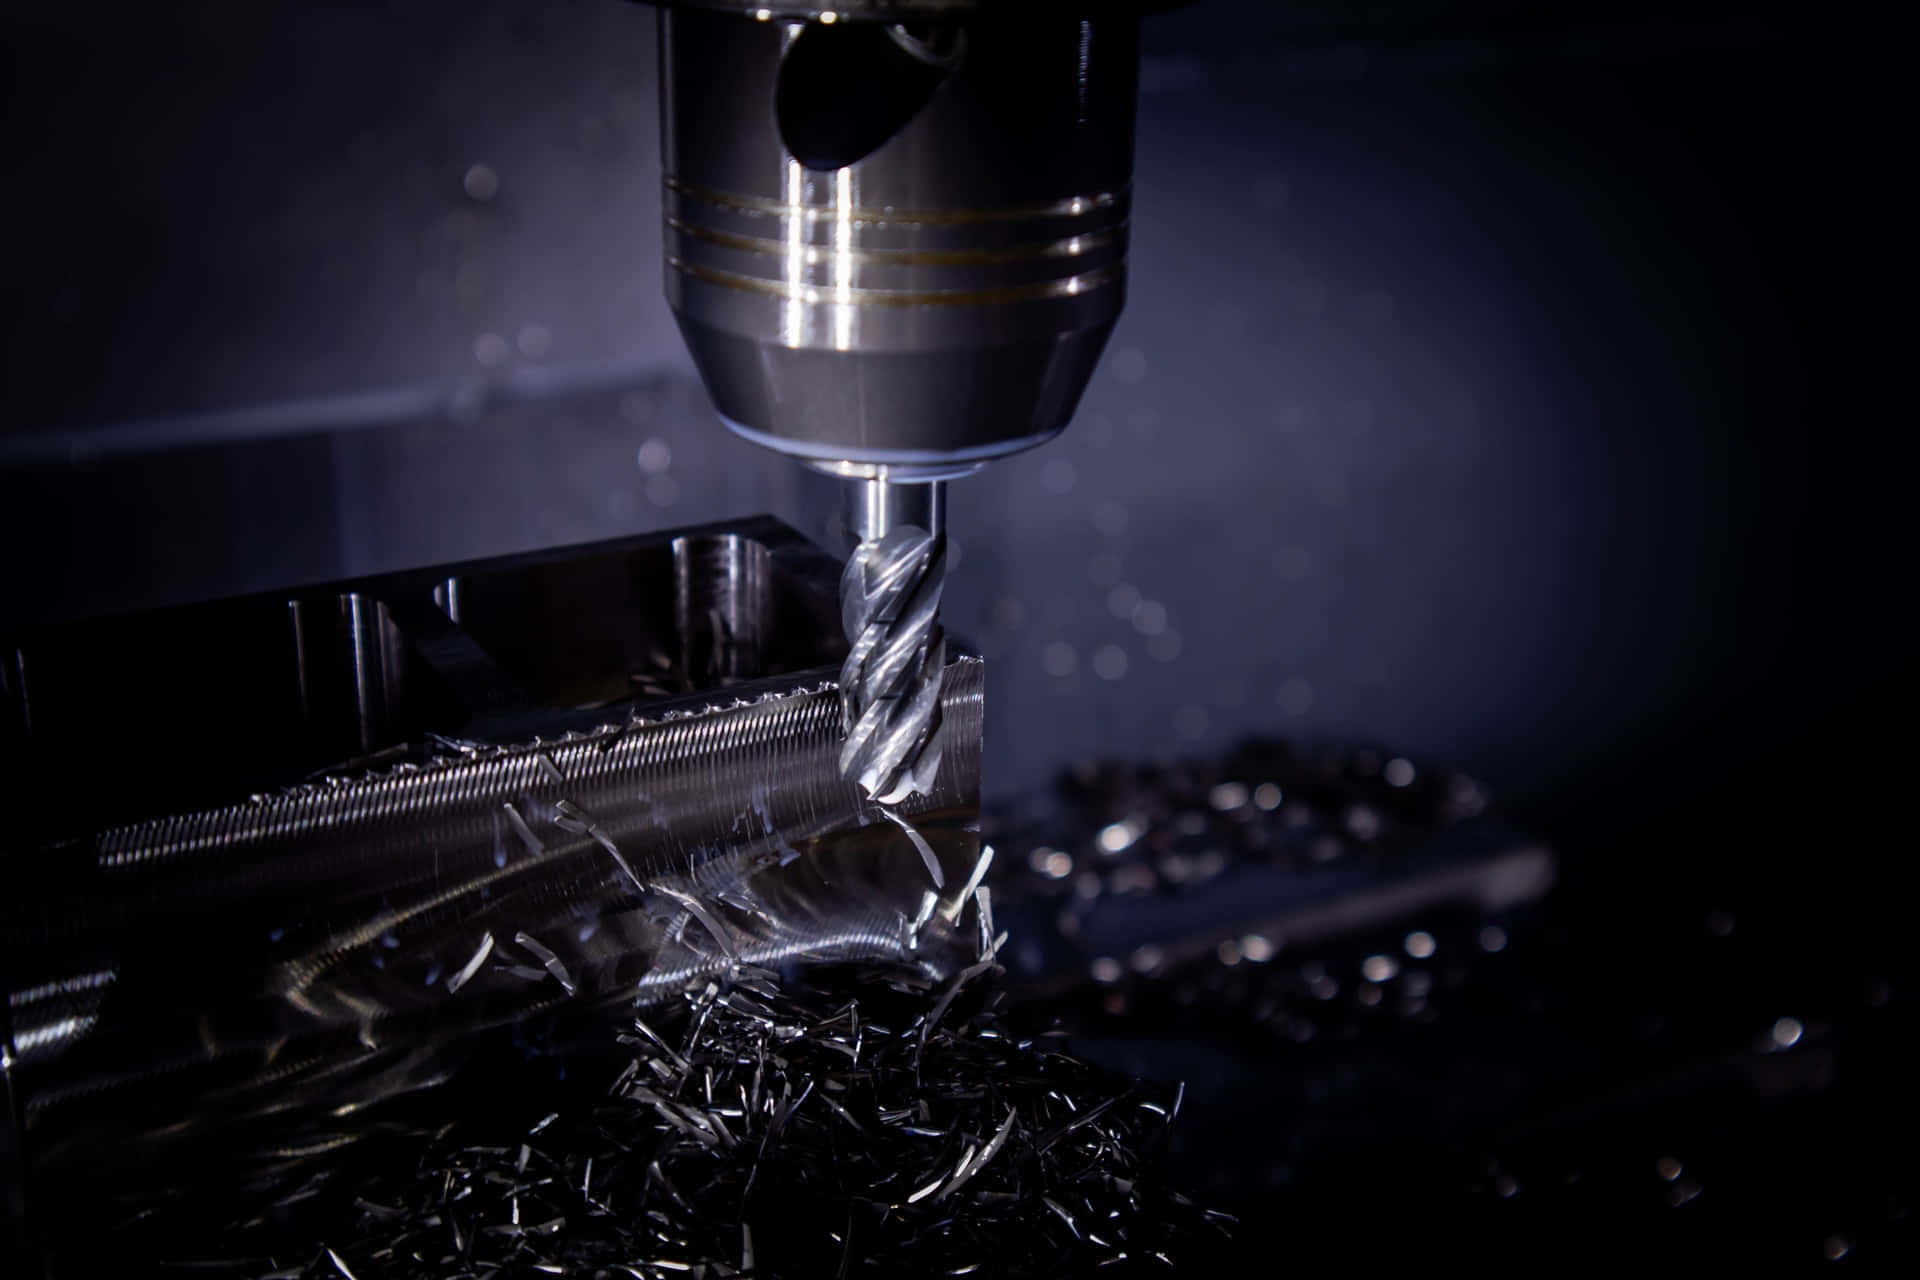 En maskine bruges til at fremstille metalprodukter. Wallpaper